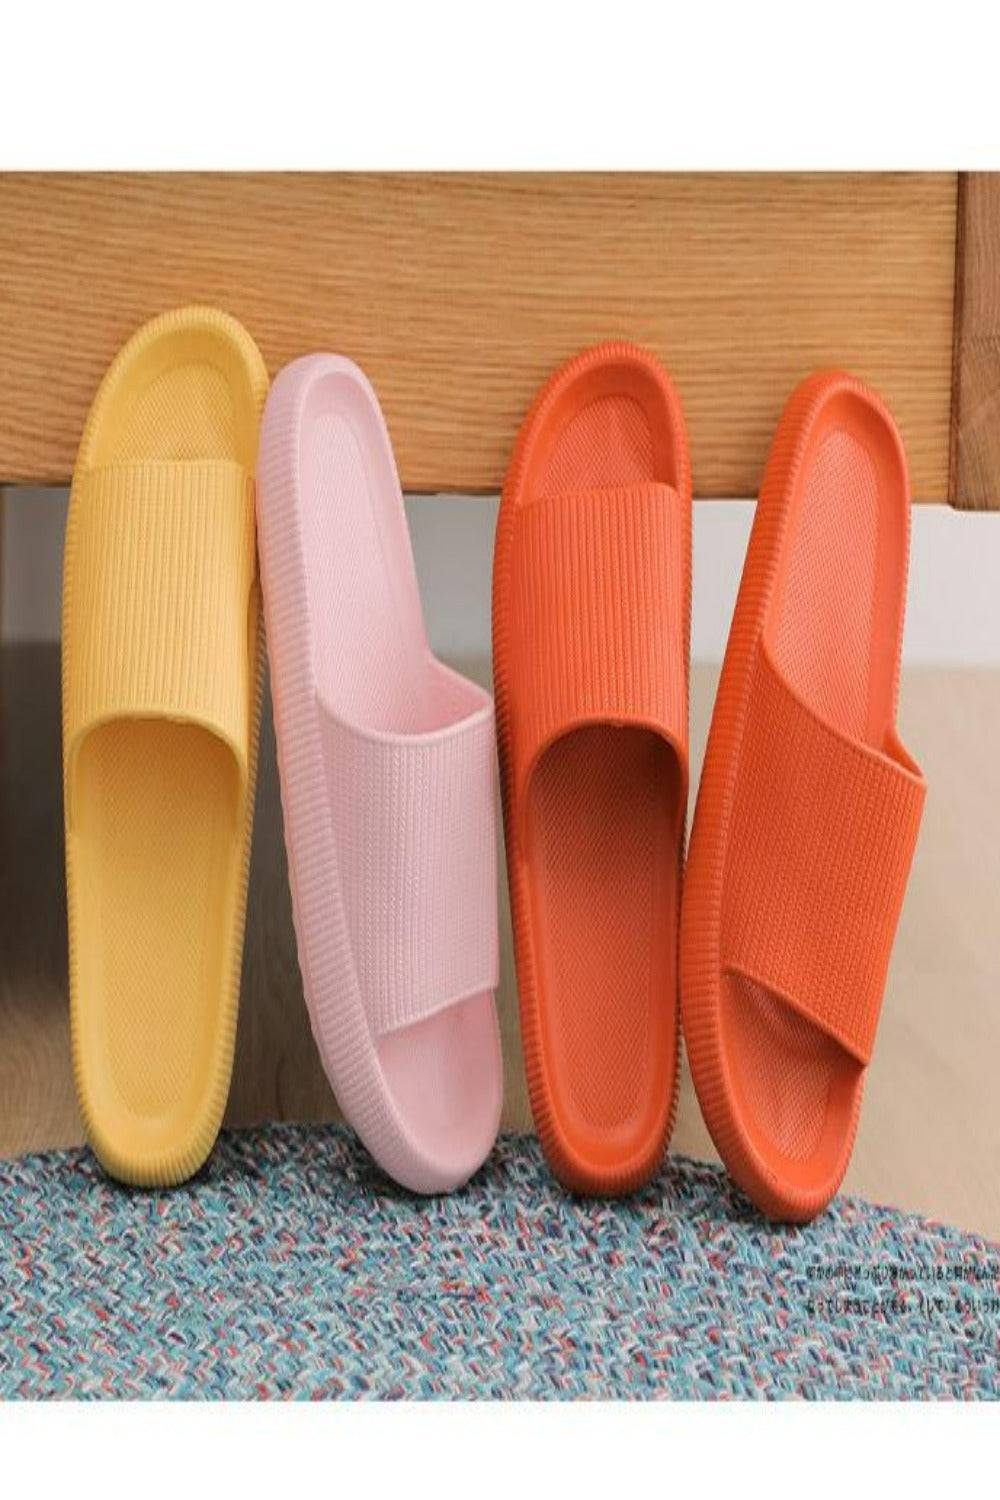 Thick Platform Comfy Yellow Rubber Slide Sandals - TGC Boutique - Yellow Slides